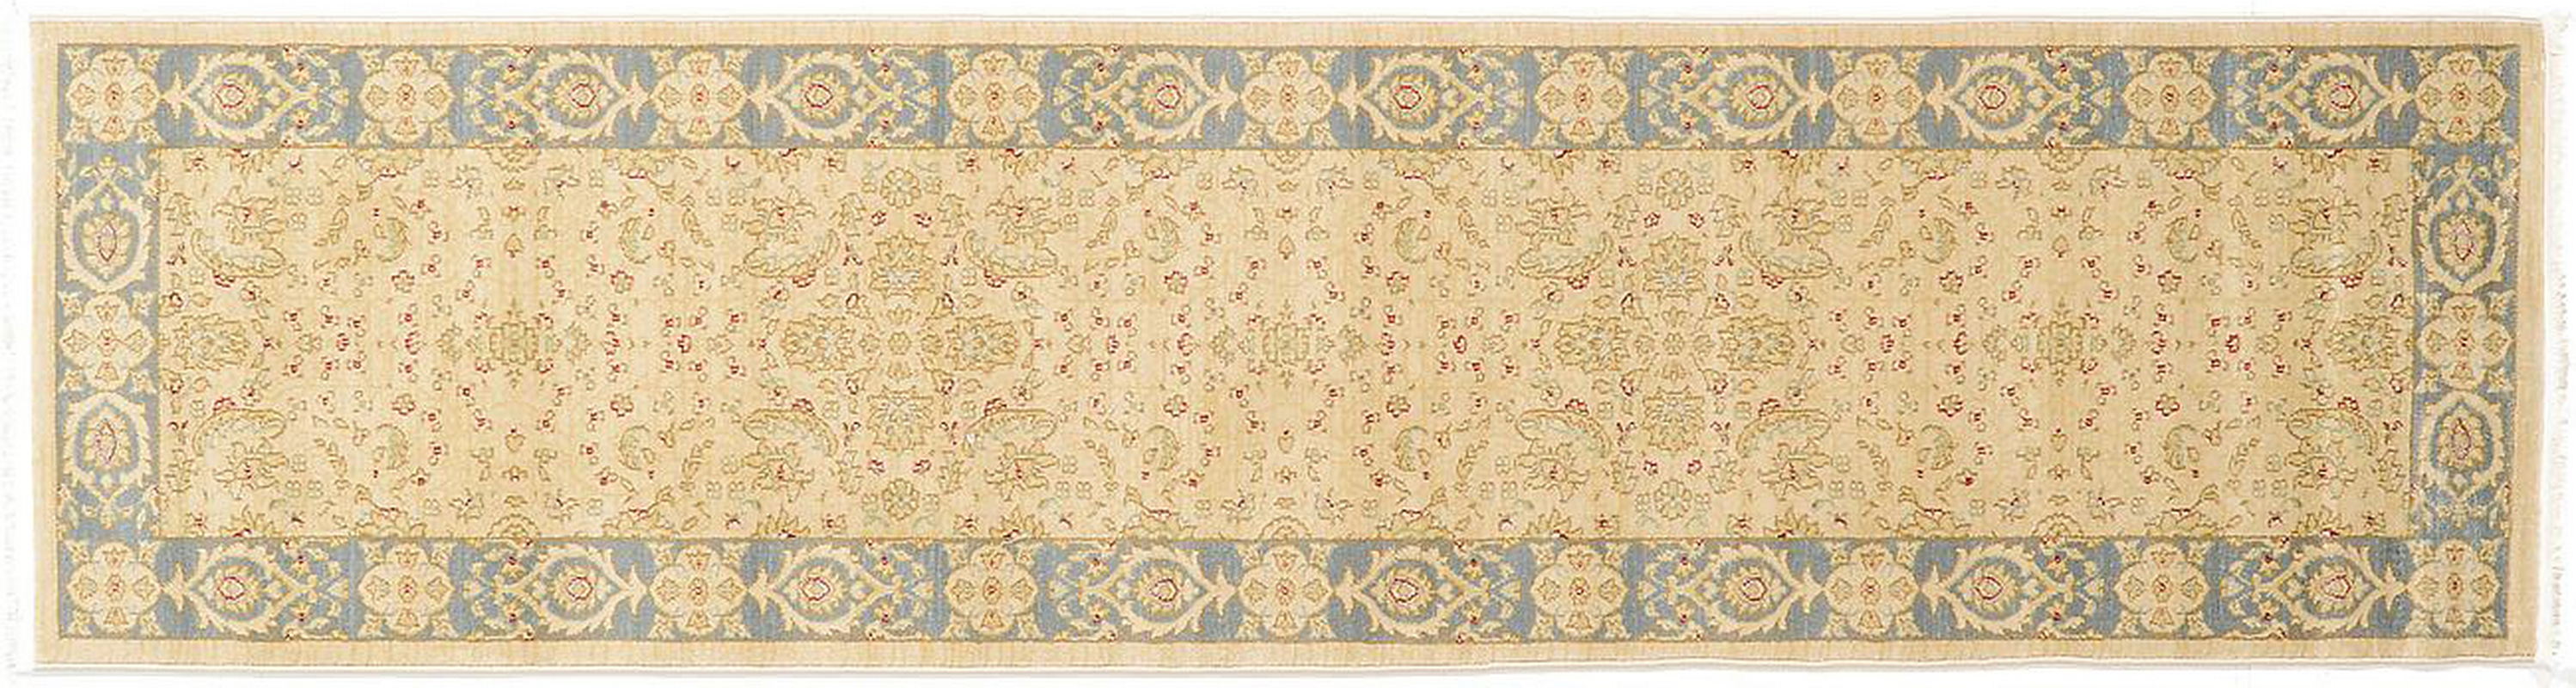 古典经典地毯ID9731